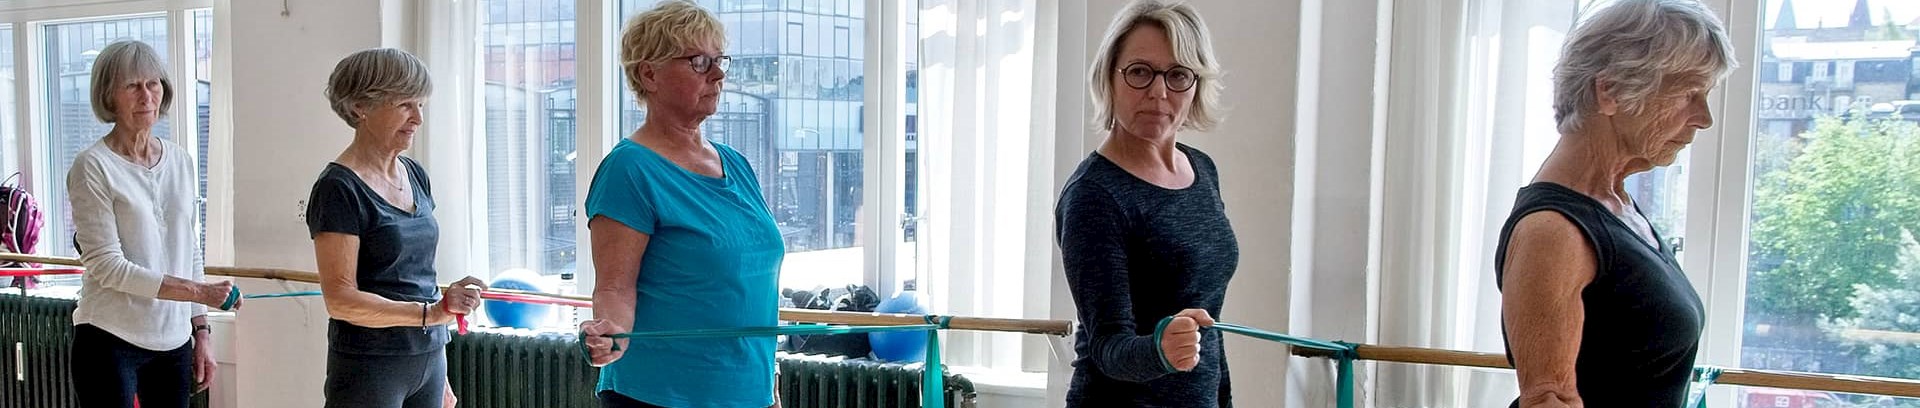 Kvinder som laver træning med elastik ved FOF Aarhus